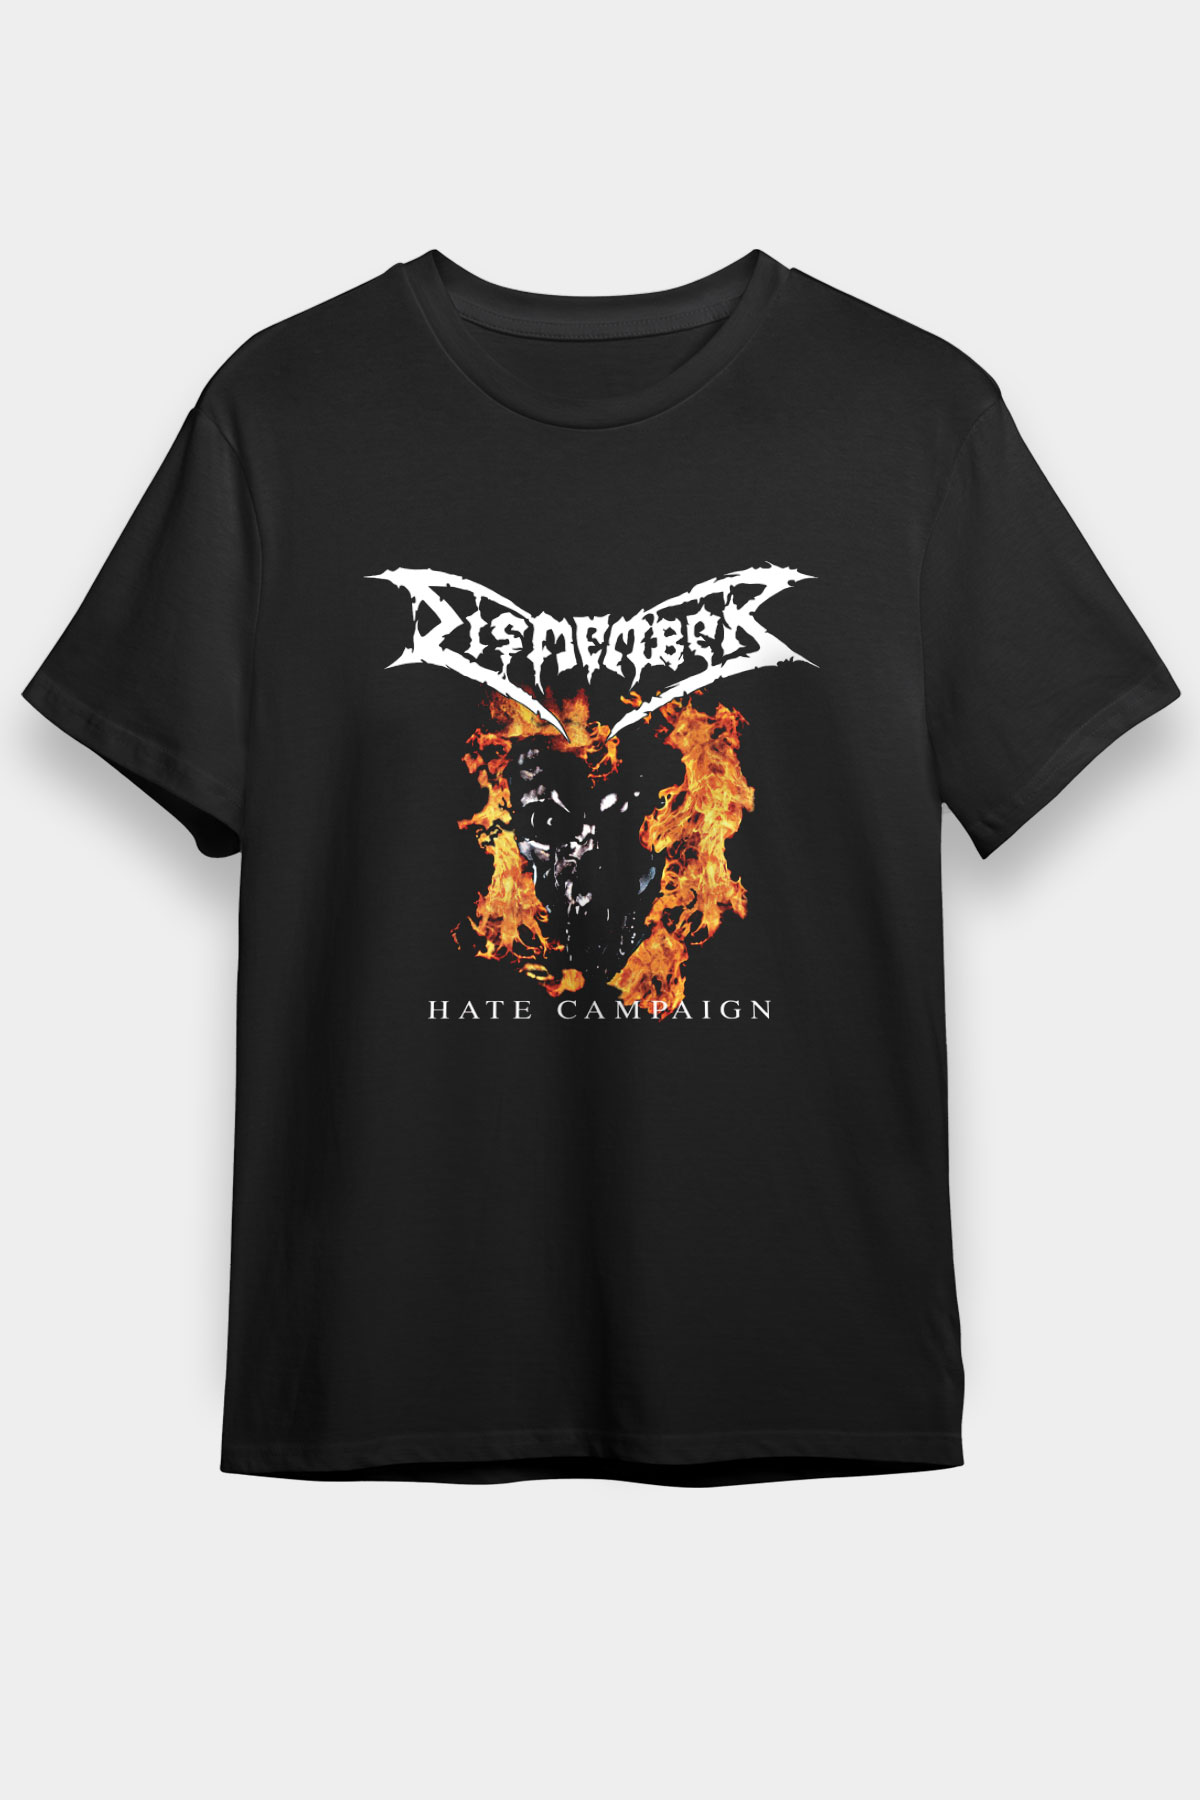 Dismember T shirt, Music Band ,Unisex Tshirt 03/